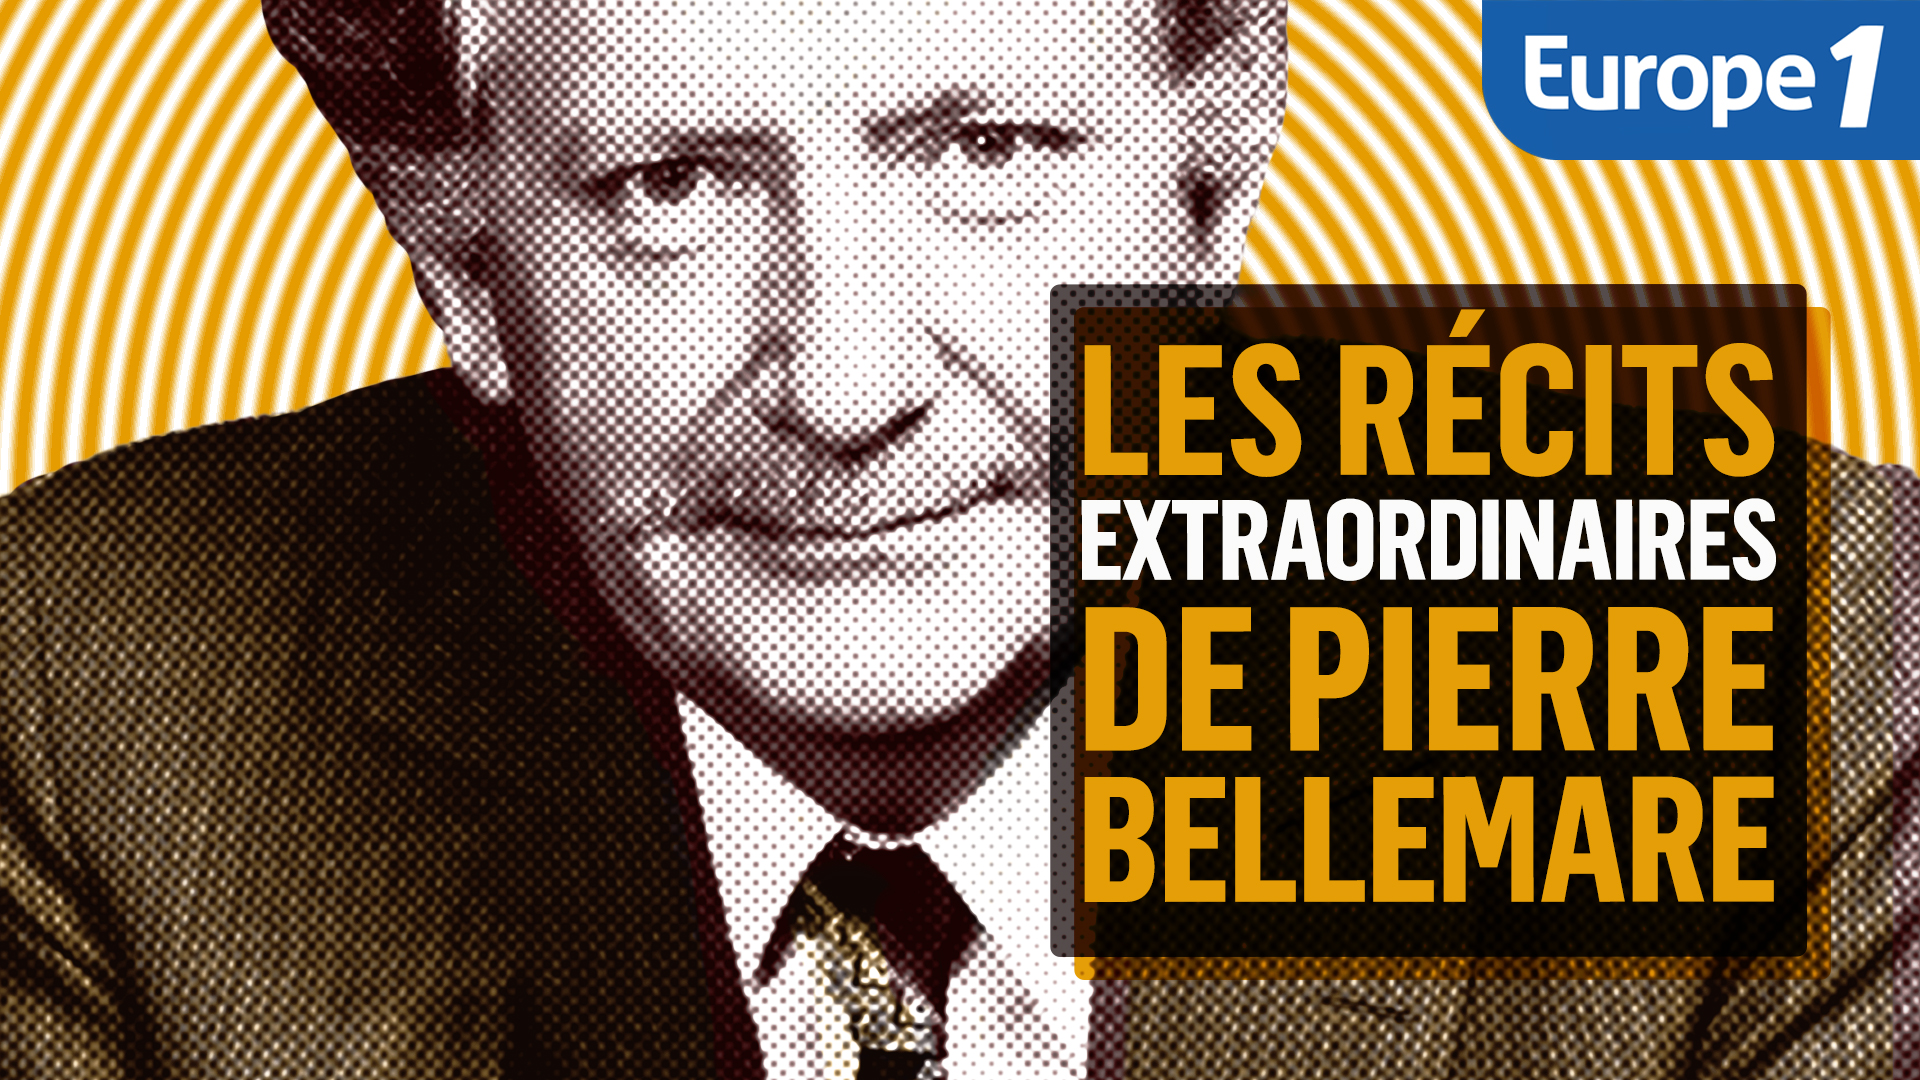 "Les récits extraordinaires de Pierre Bellemare" dans un podcast Europe 1 